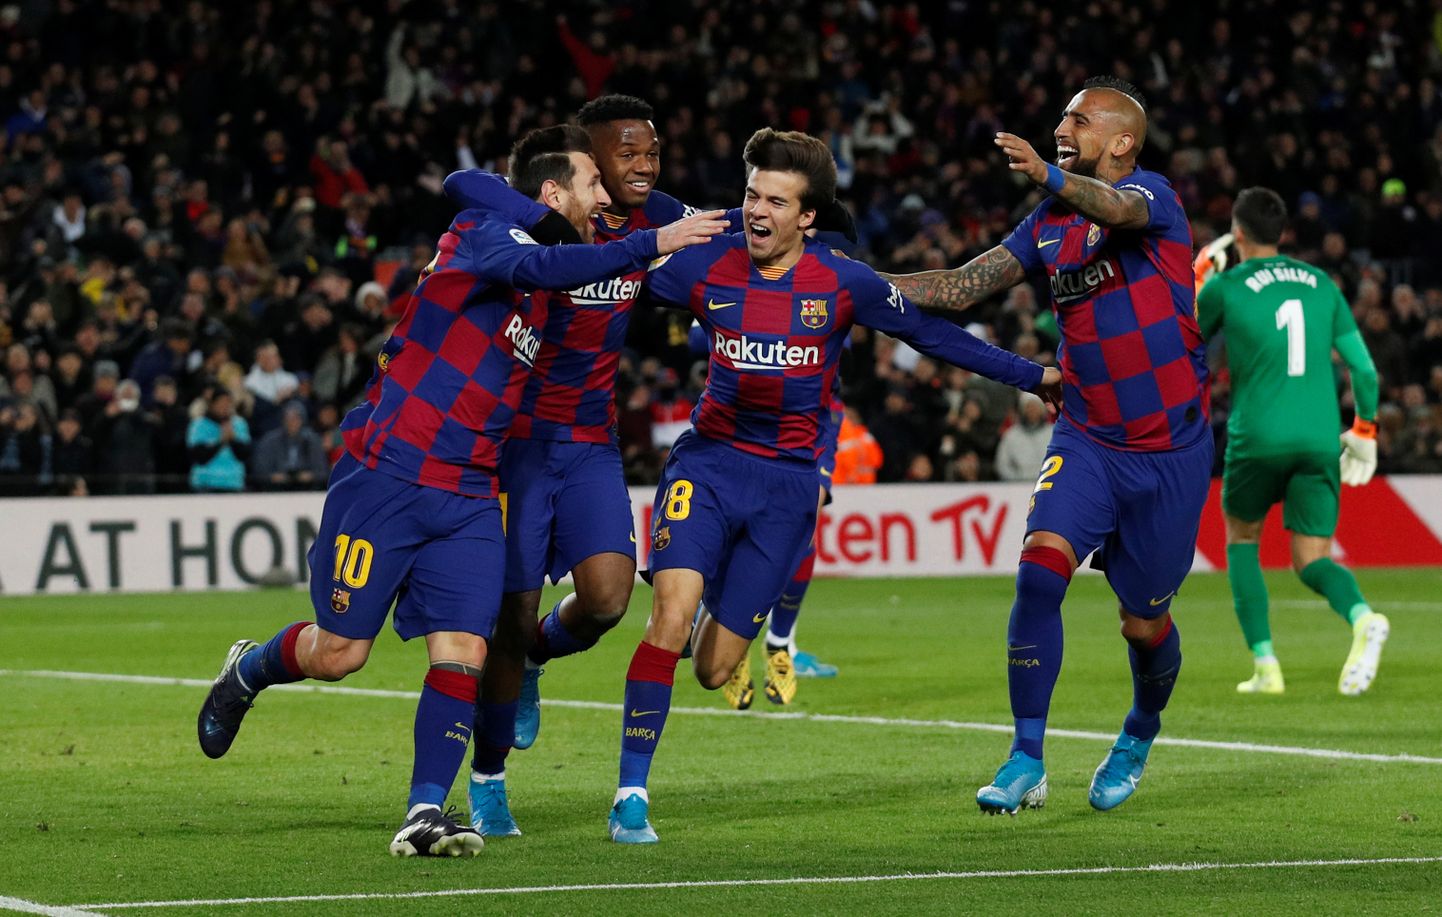 Barcelona mängijad väravat tähistamas.